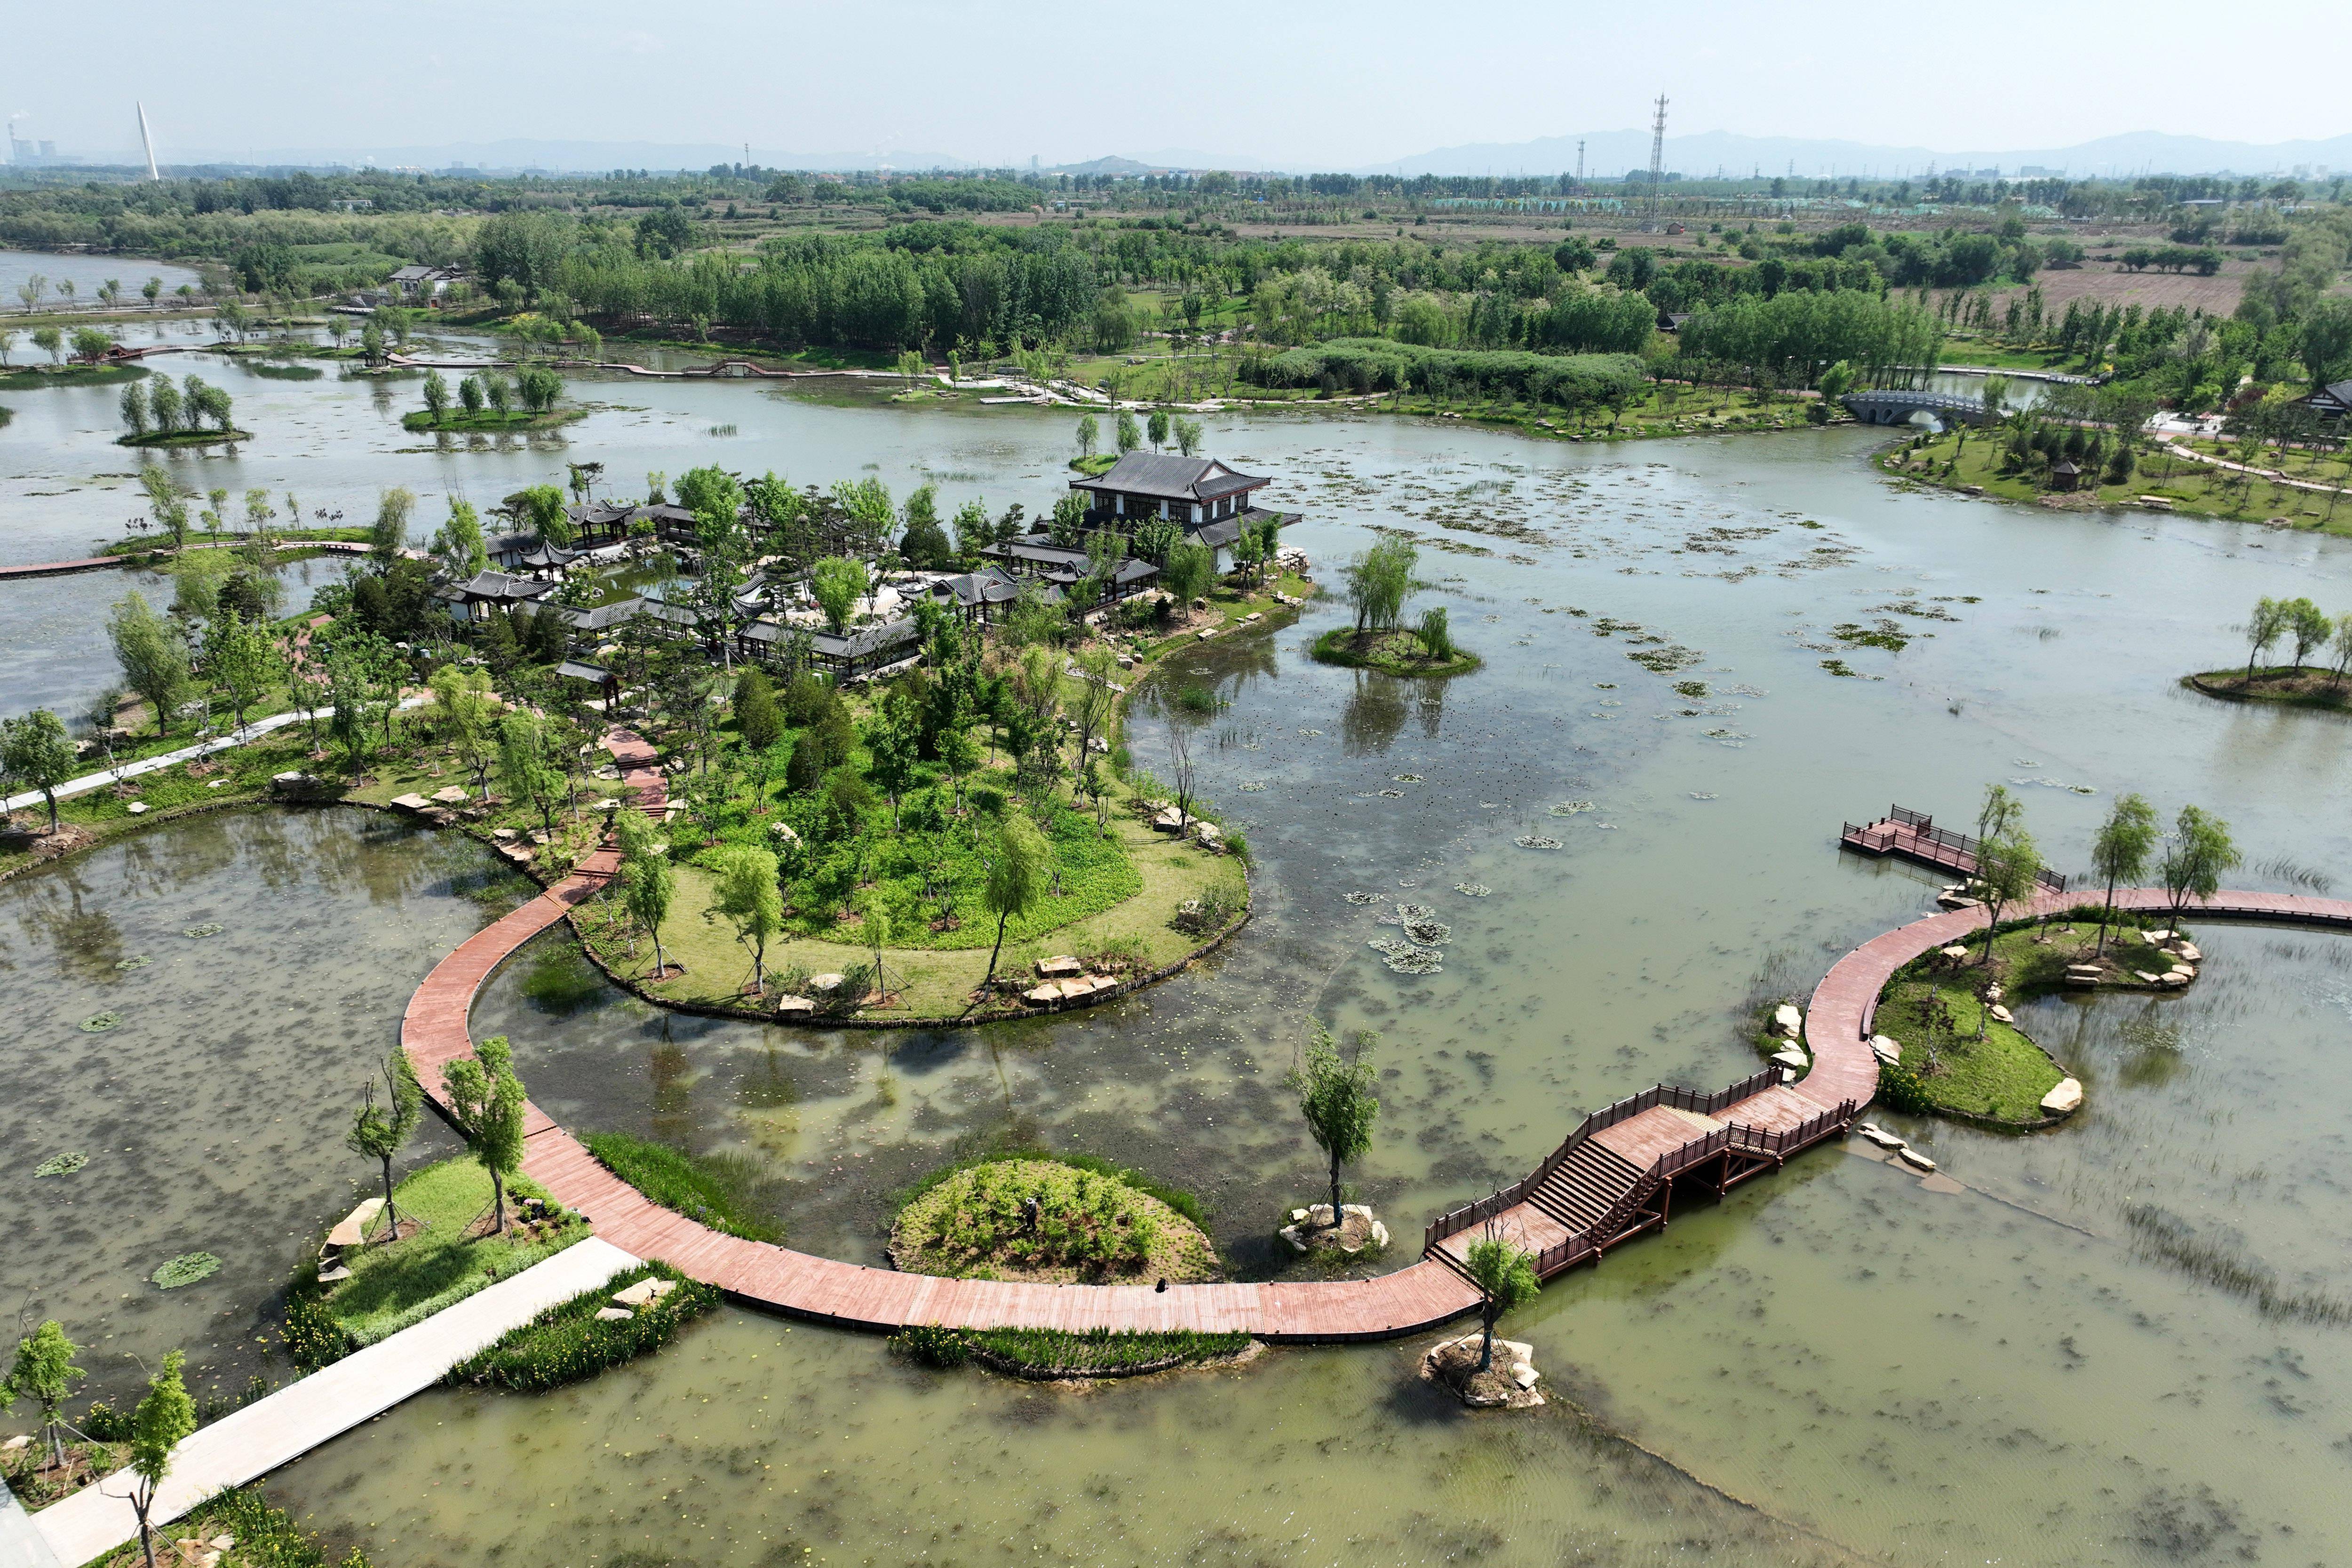 詹彦 摄近年来,山西省长治市不断加强漳泽湖国家城市湿地公园生态环境